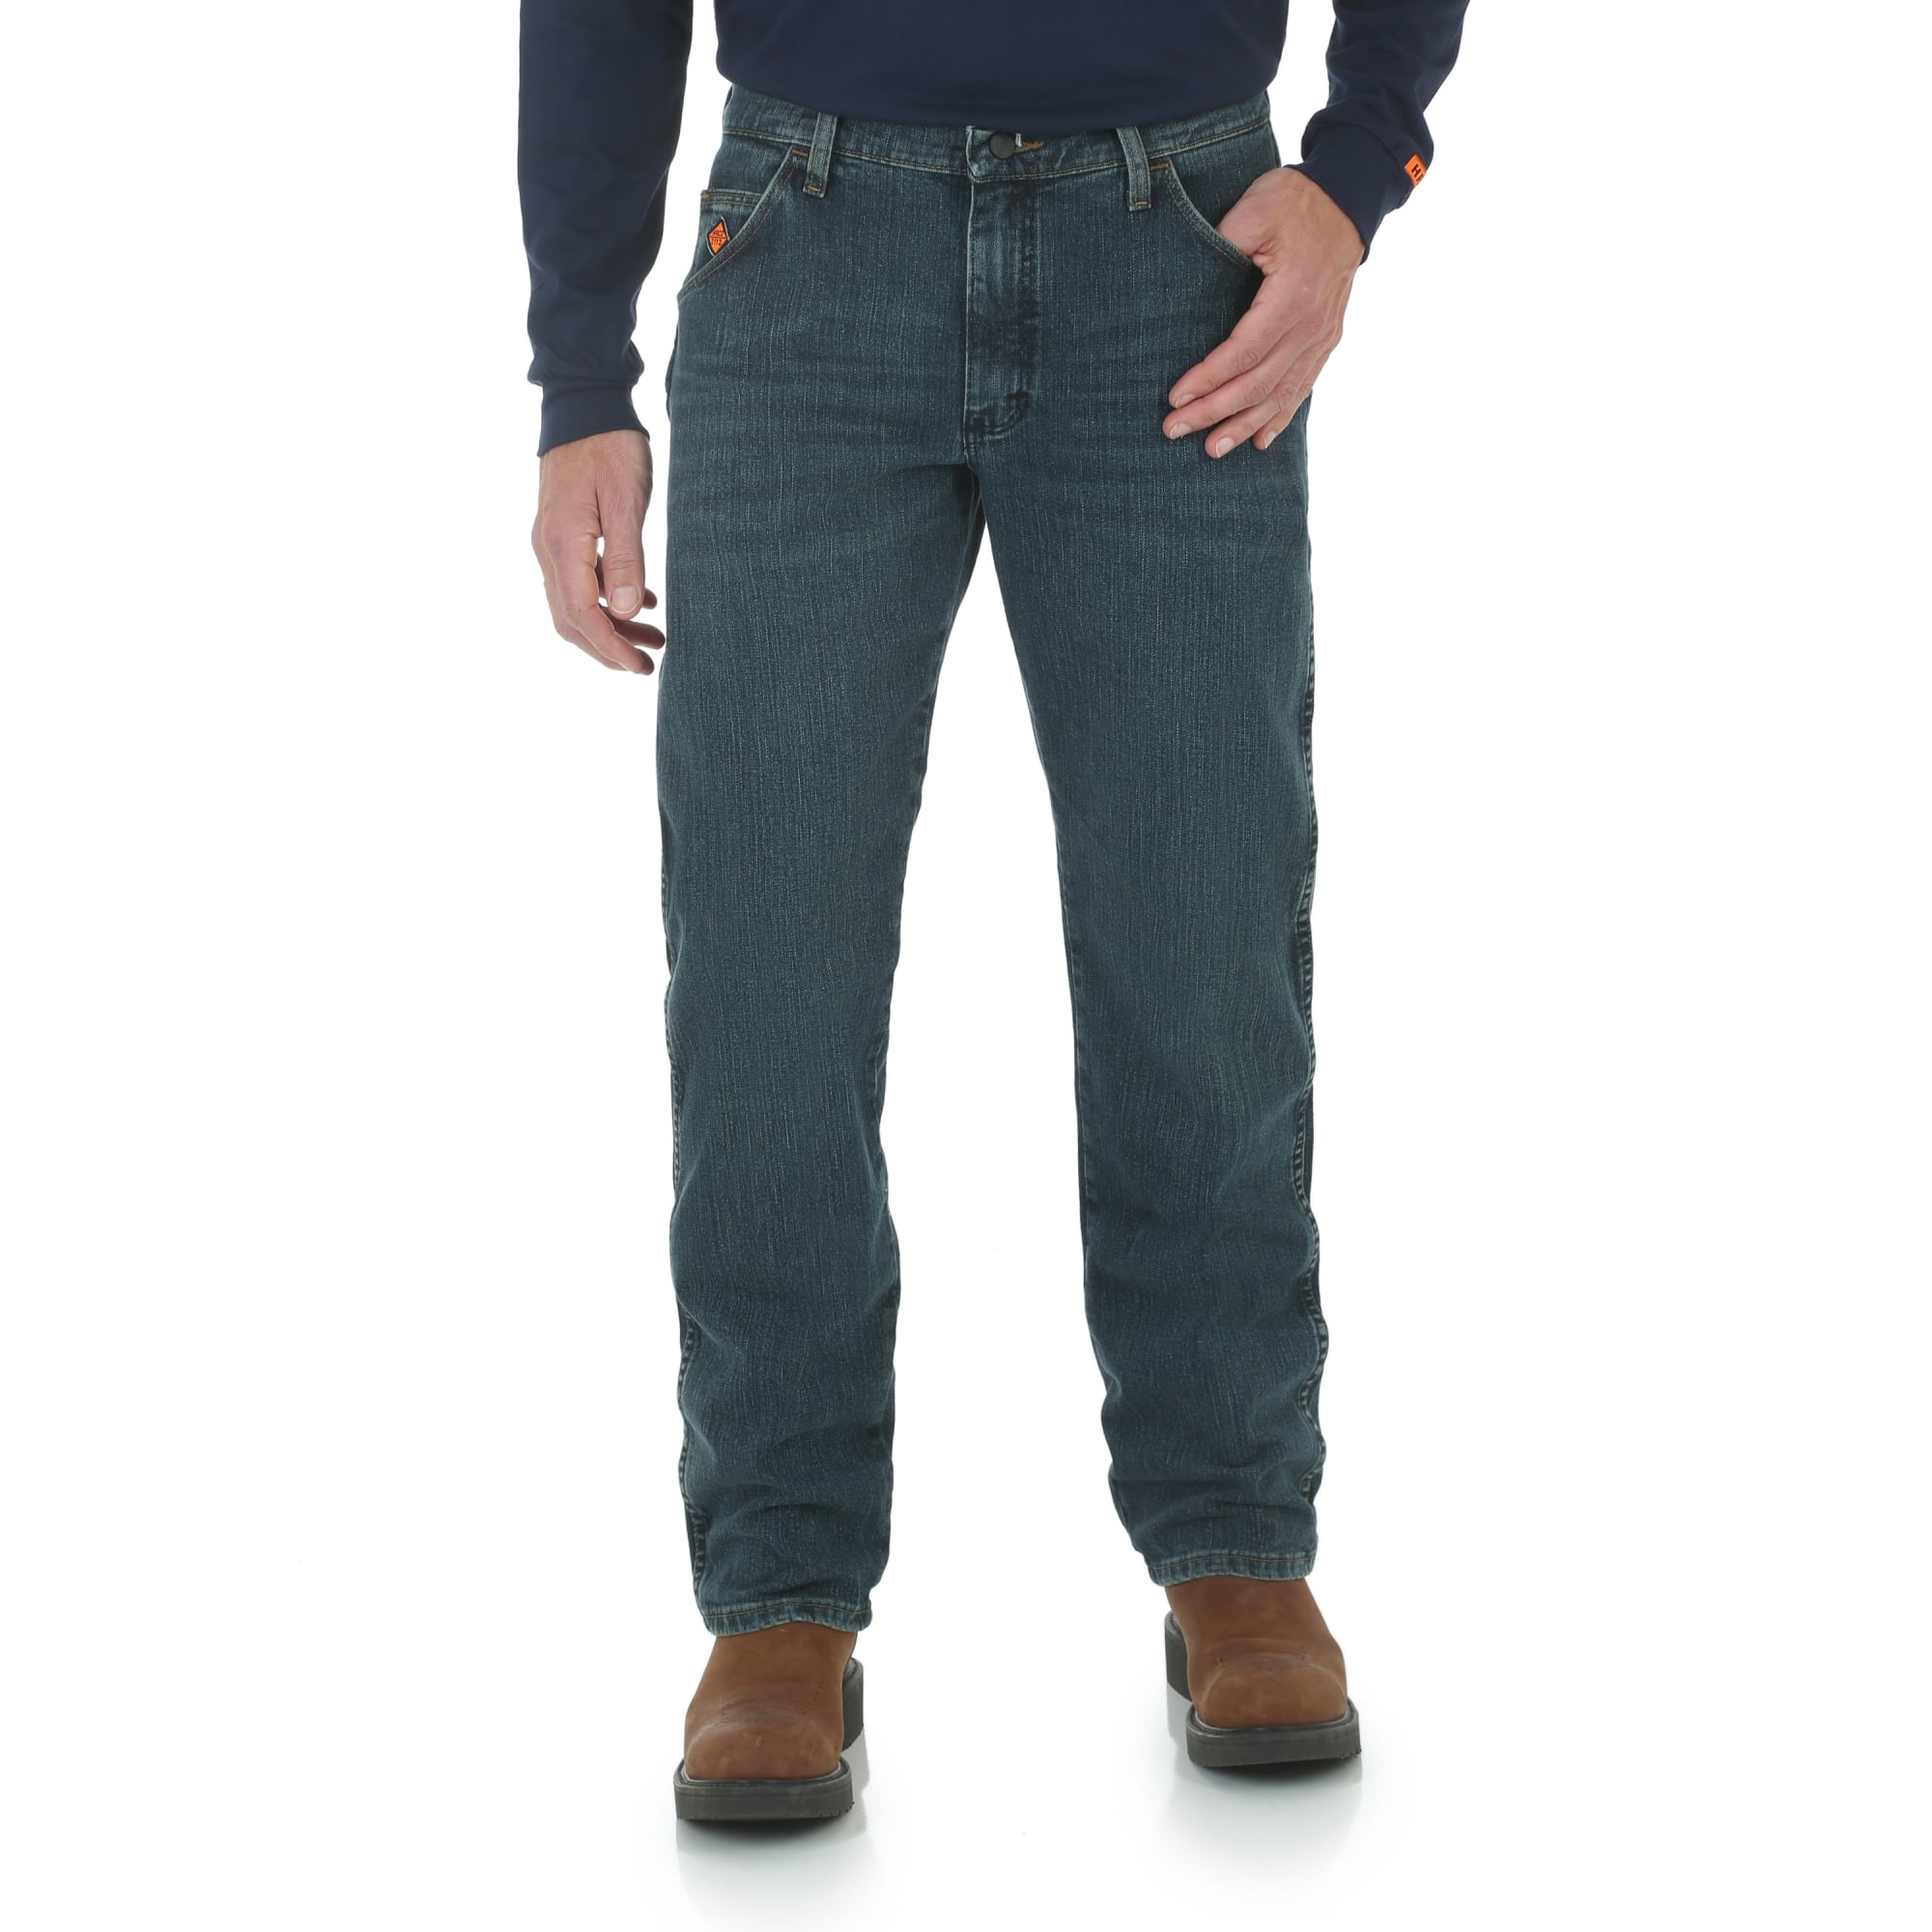 Details about   Titicaca Men's FR Jeans Flame Resistant Low Rise Comfort 11.5oz Cotton Jeans 